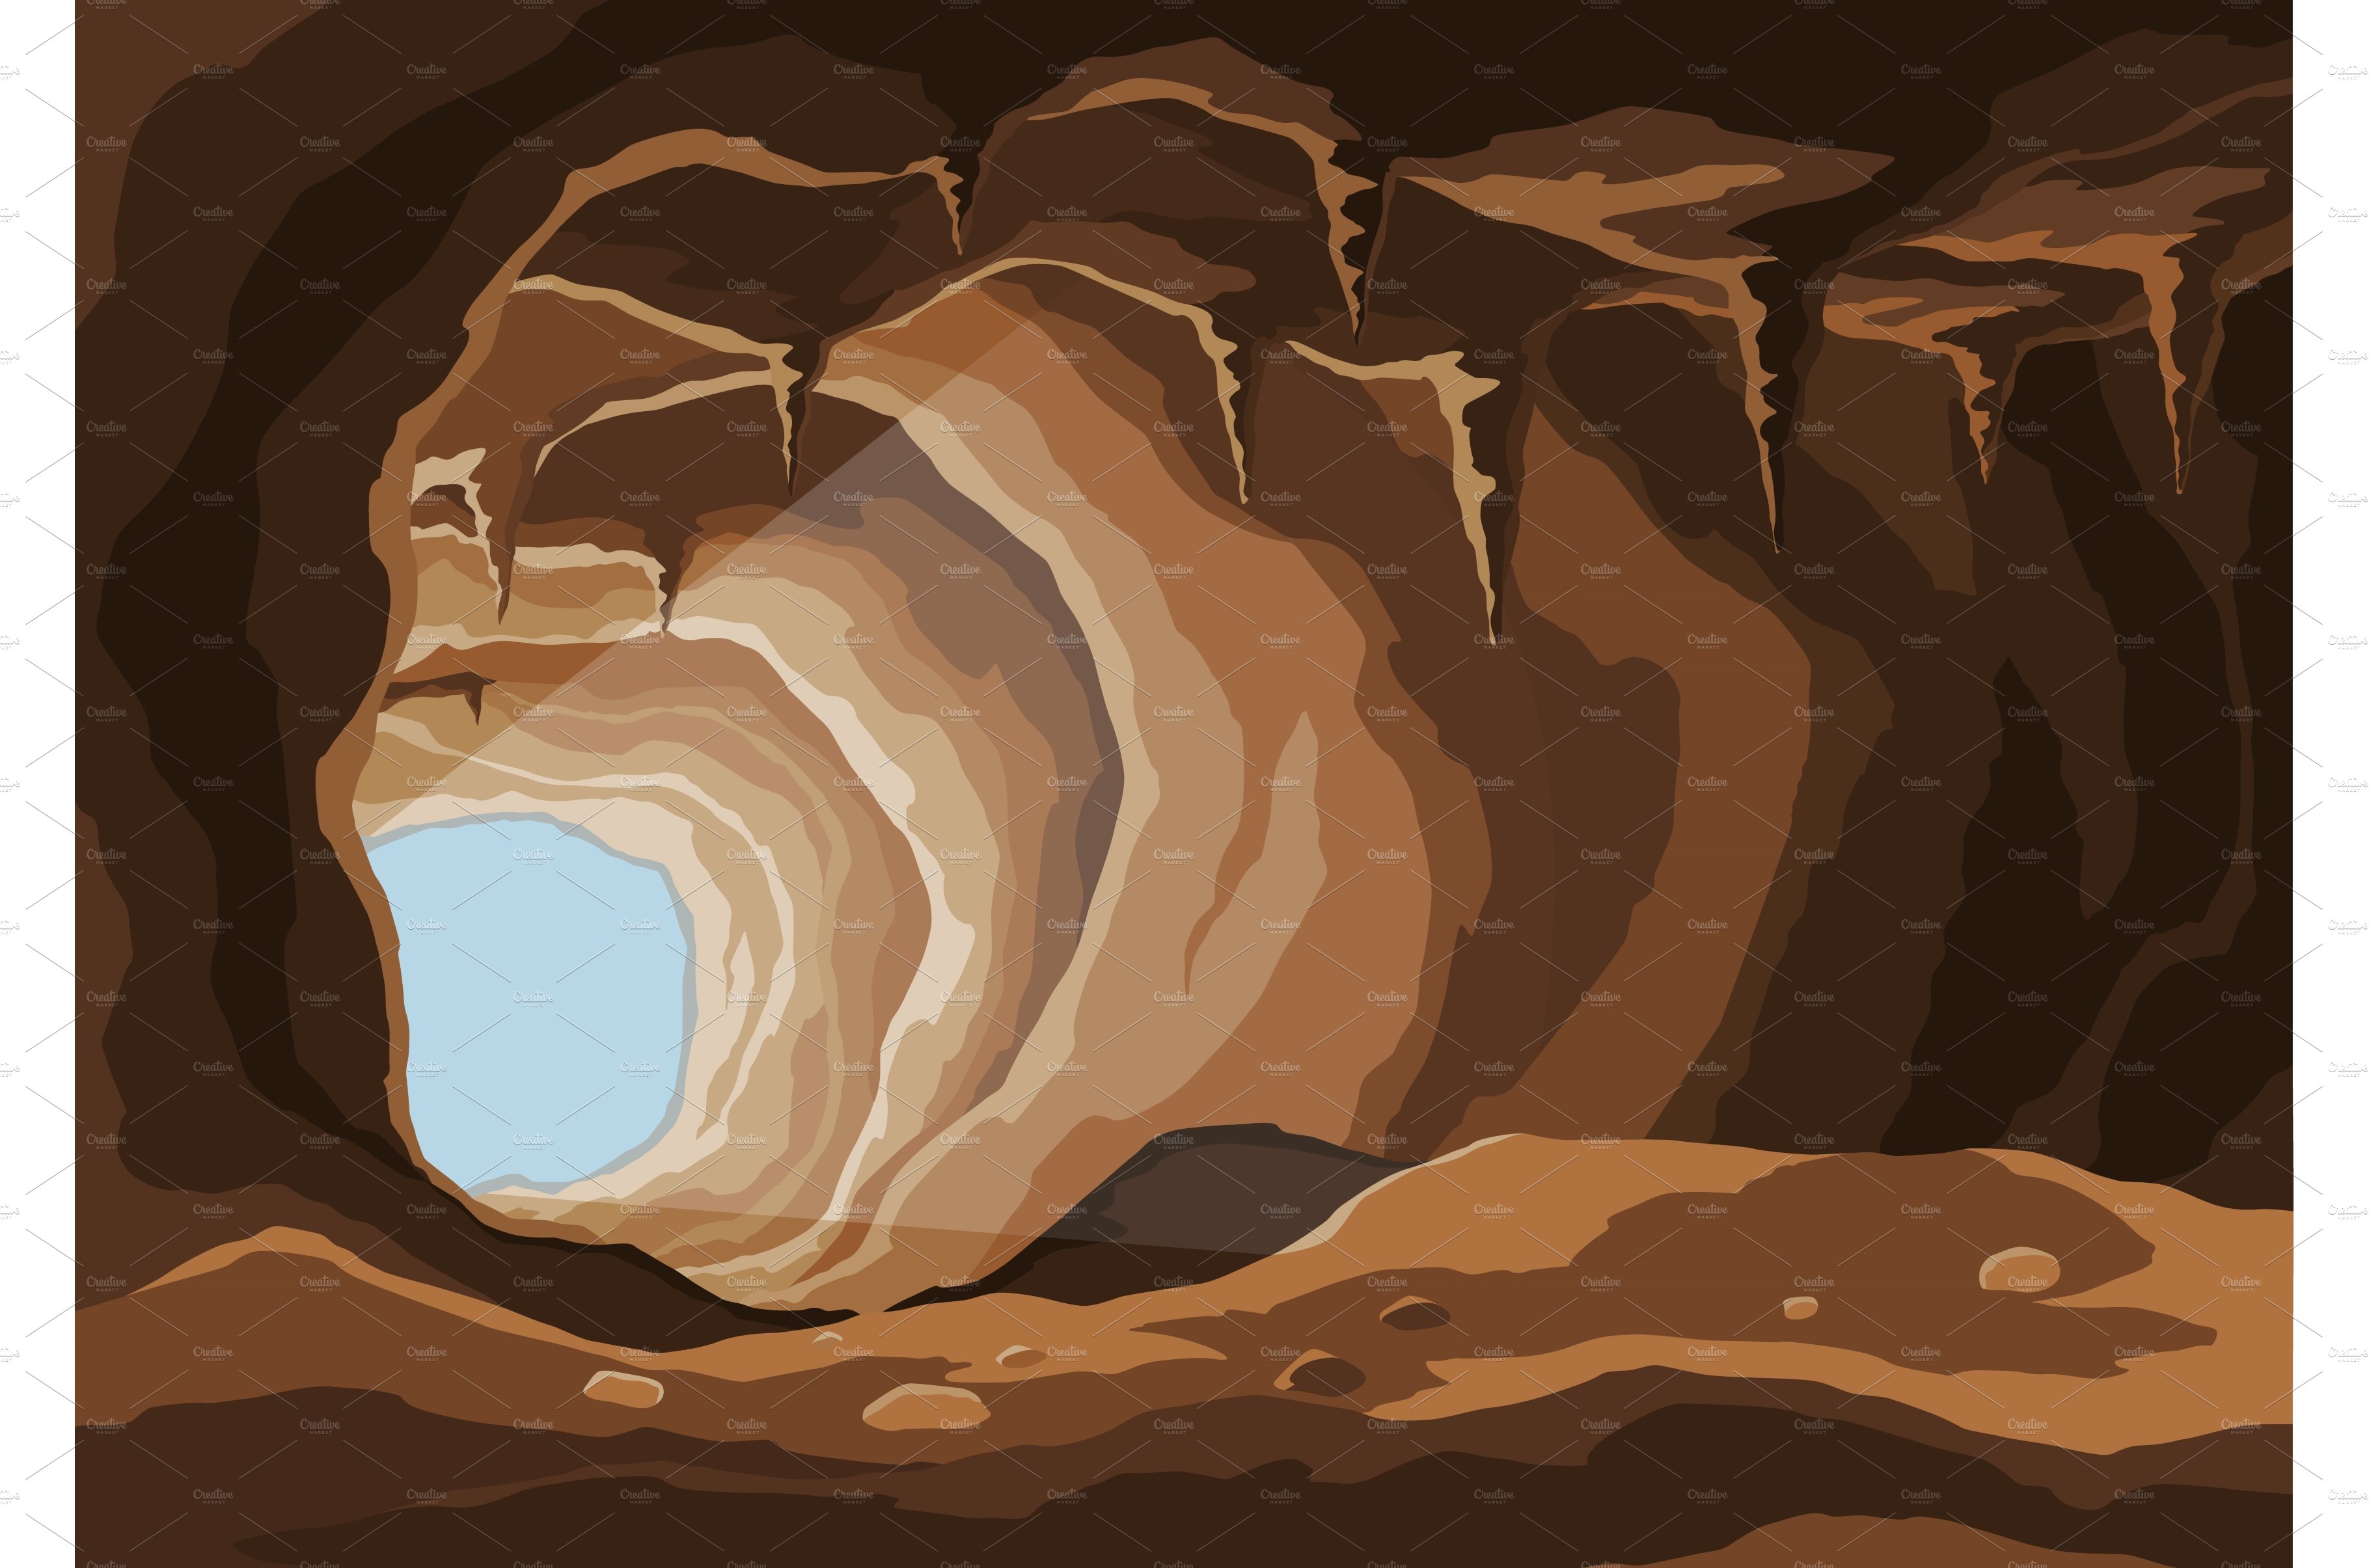 Treasure cave. Concept, art cover image.